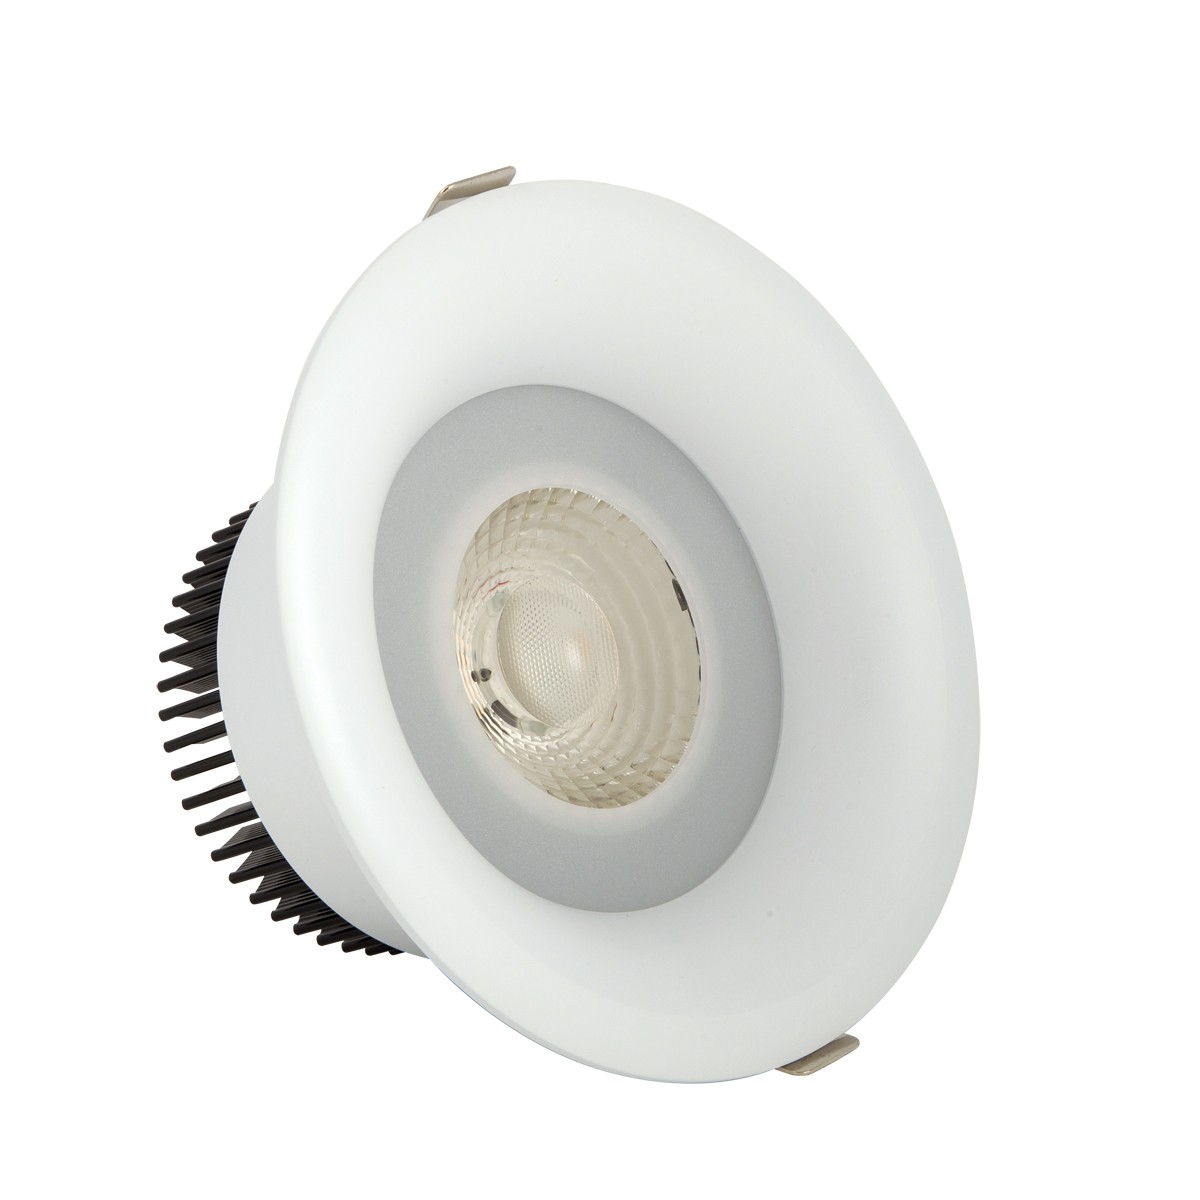 Φωτιστικό downlight στρογγυλό  λευκού χρώματος 30W 4000K 27000 lumen με ενσωματωμένο λαμπτήρα 36D VK/04150/W/C/36